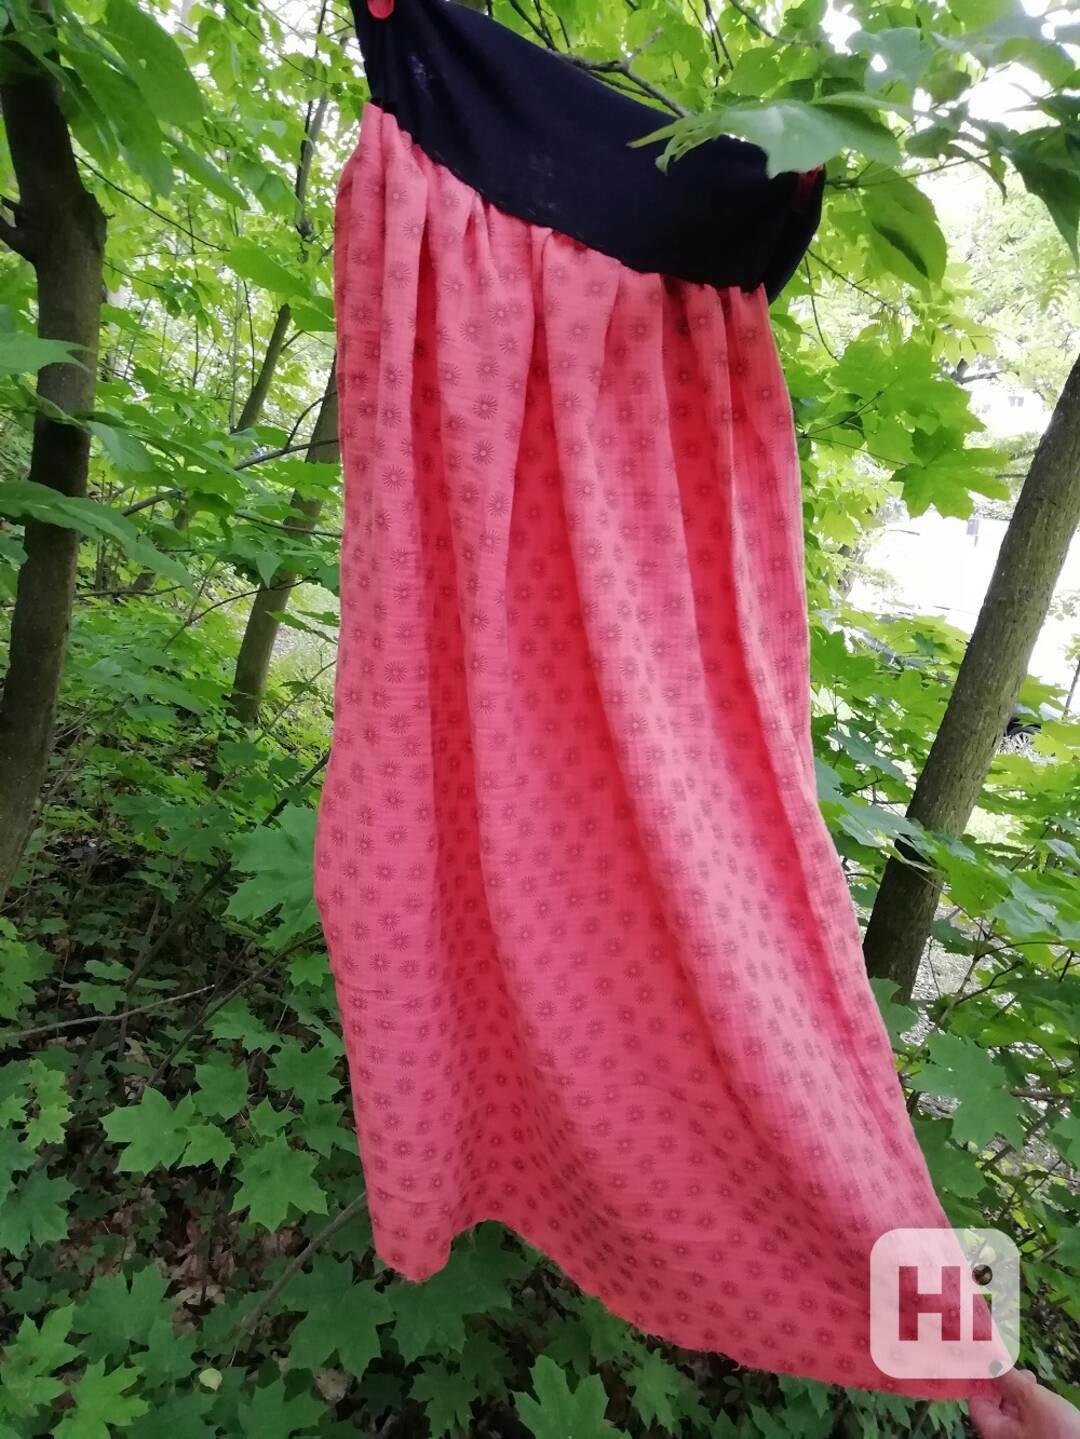 Nová dlouhá šitá sukně - šedé kytičky na lososové Vel. M - foto 1